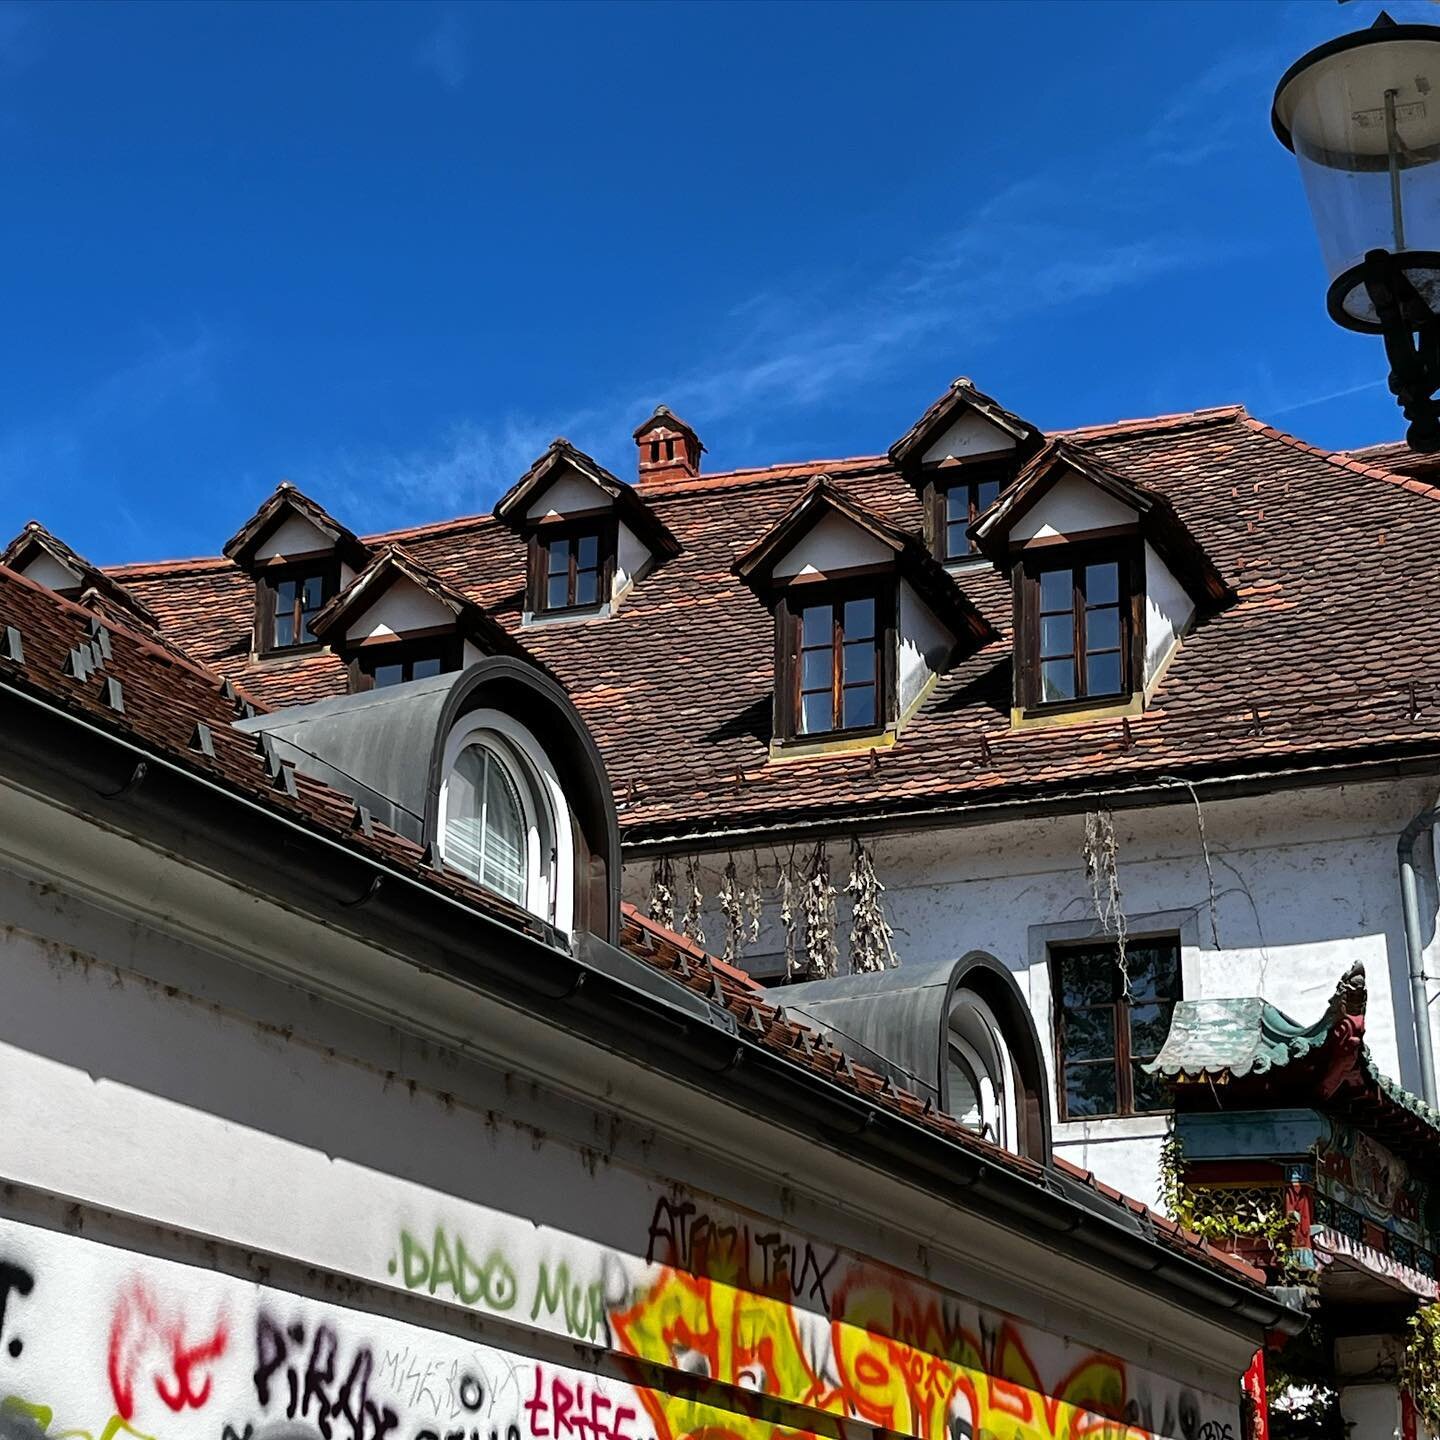 Abba&igrave;ni, tegole e cielo blu.
Un giorno capir&ograve; cosa attrae il mio &lsquo;sguardo fotografico&rsquo;.
.
.
.
.
.
#blusky #roof #tetti #cielo #lubiana #ljubljana #visitljubljana #lovelyplace